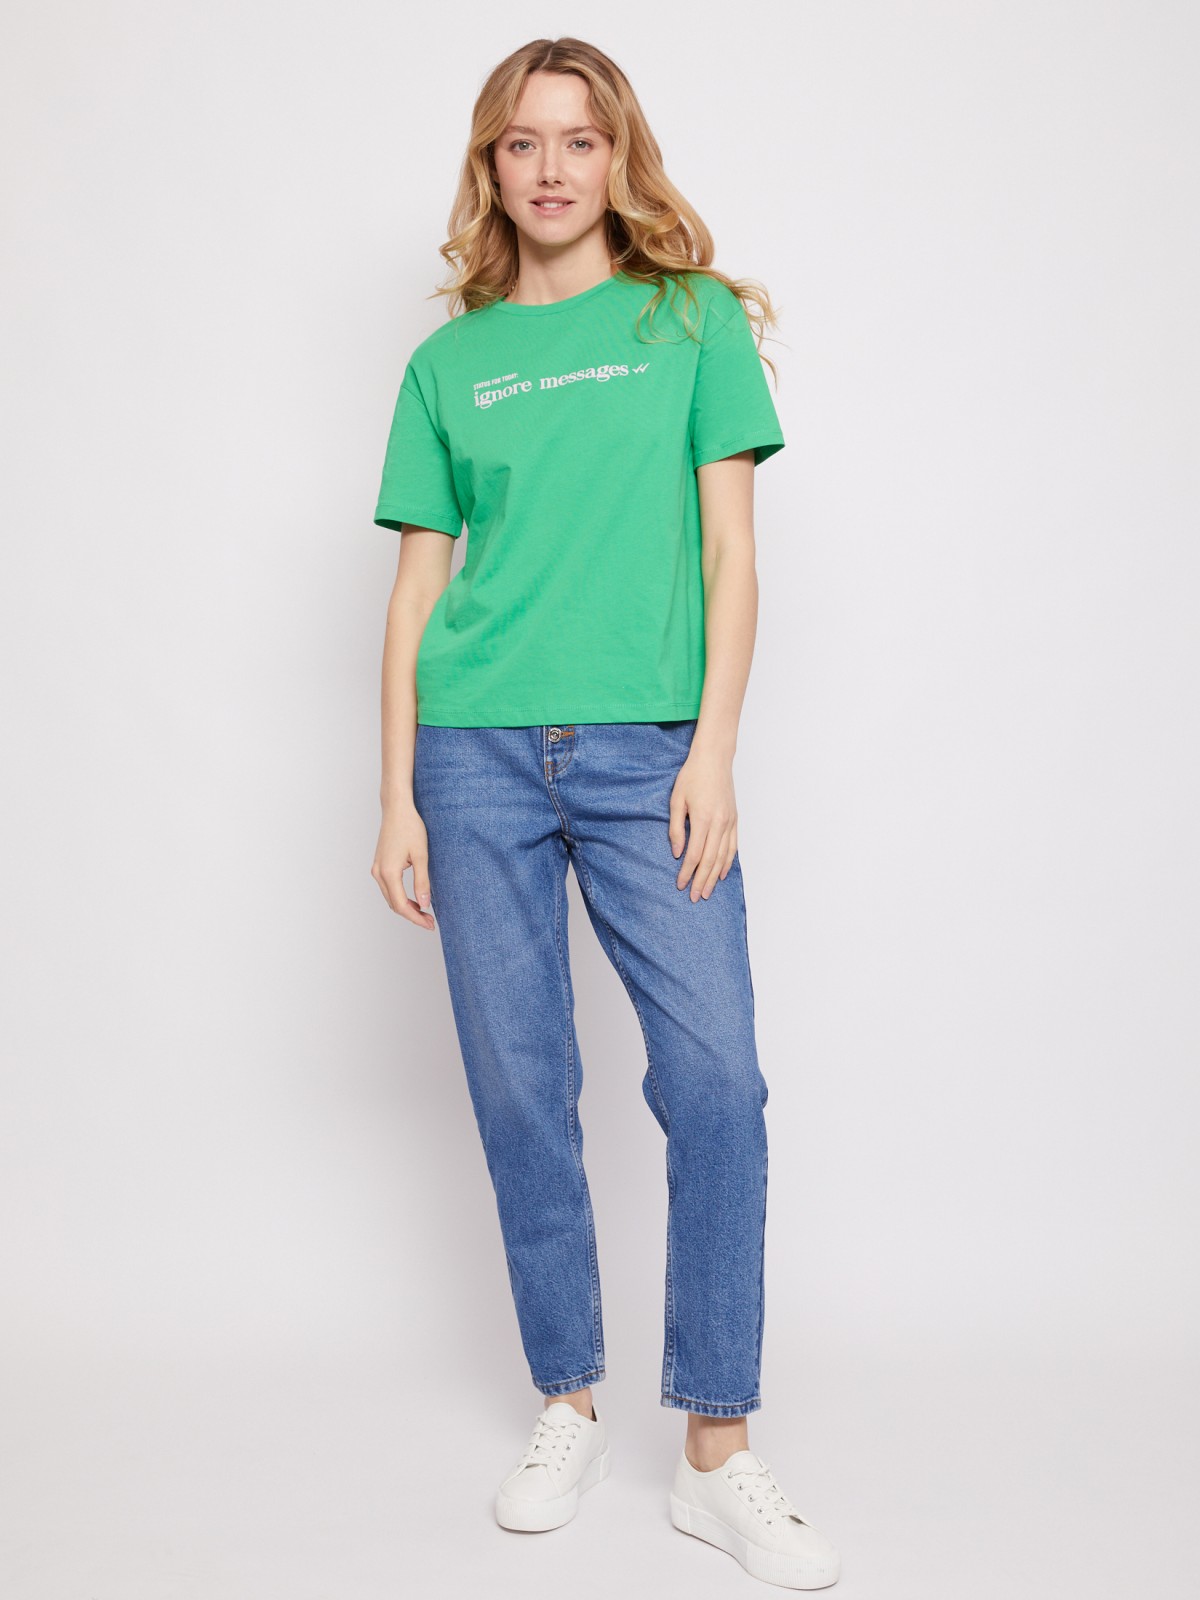 Хлопковая футболка zolla 021213295523, цвет зеленый, размер XS - фото 1